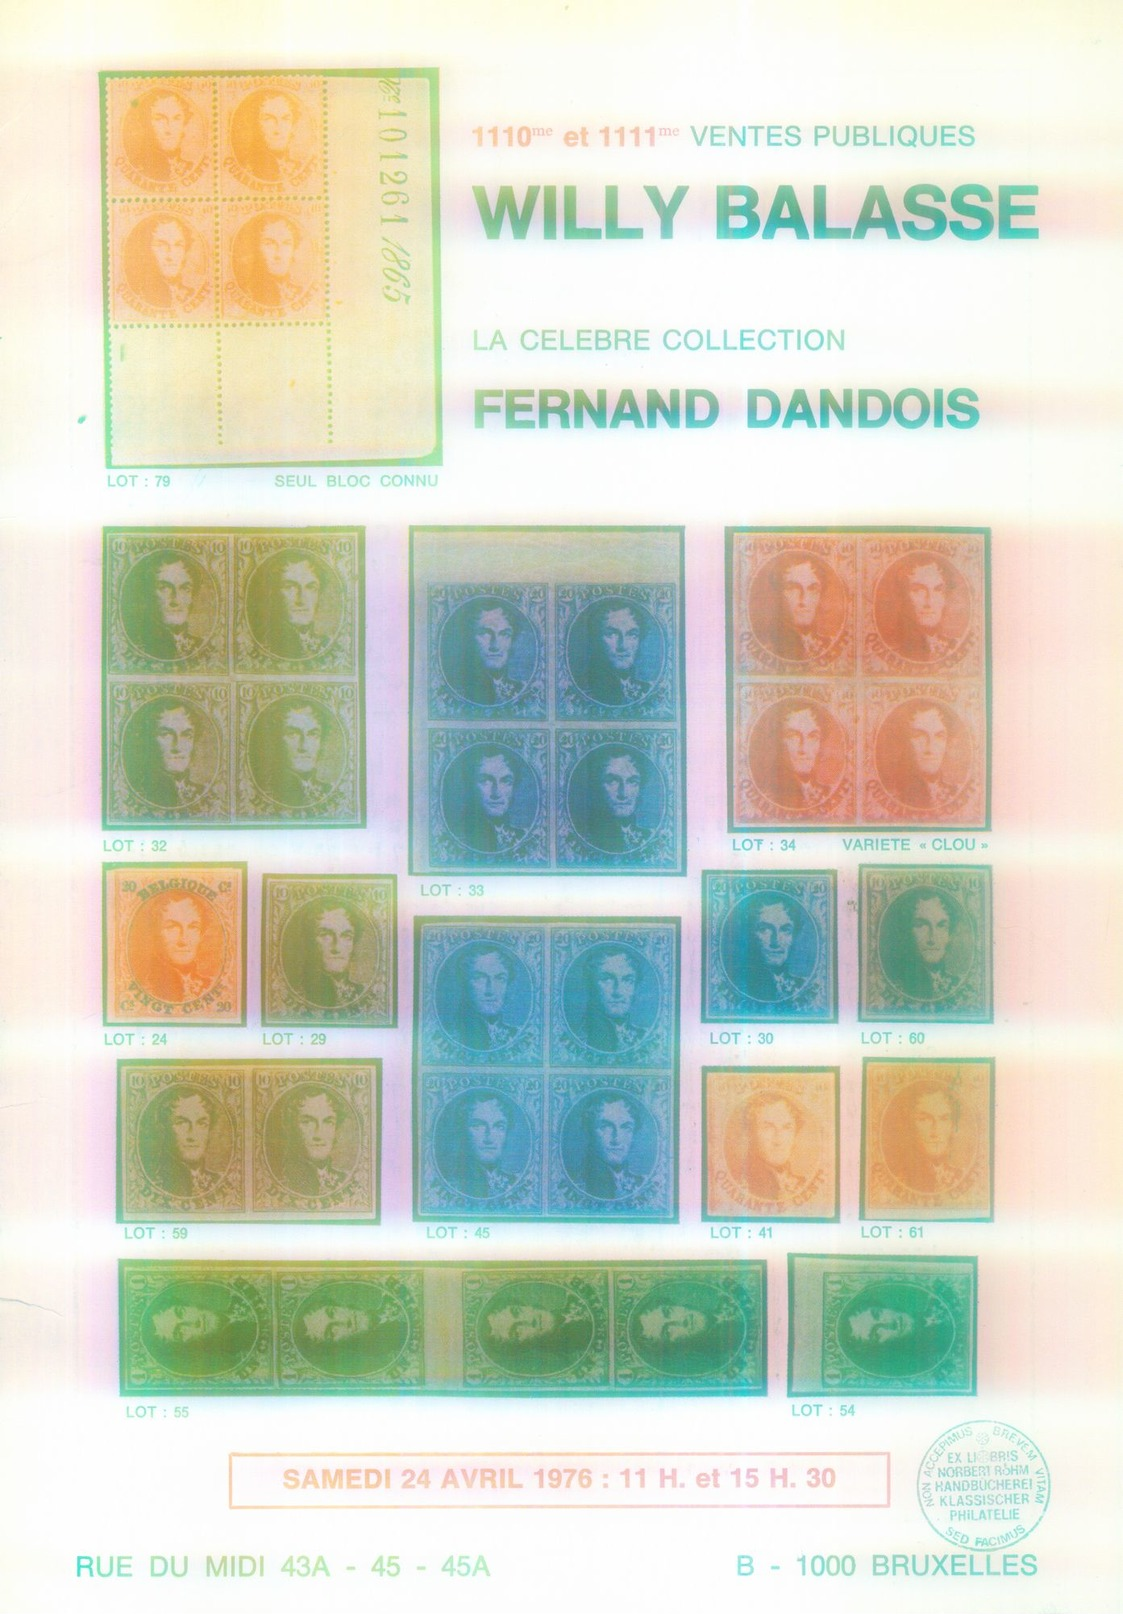 "Belgien - Sammlung Fernand Dandois" Willy Balasse 1110 - 1111. Auktion 1976 - Auktionskataloge